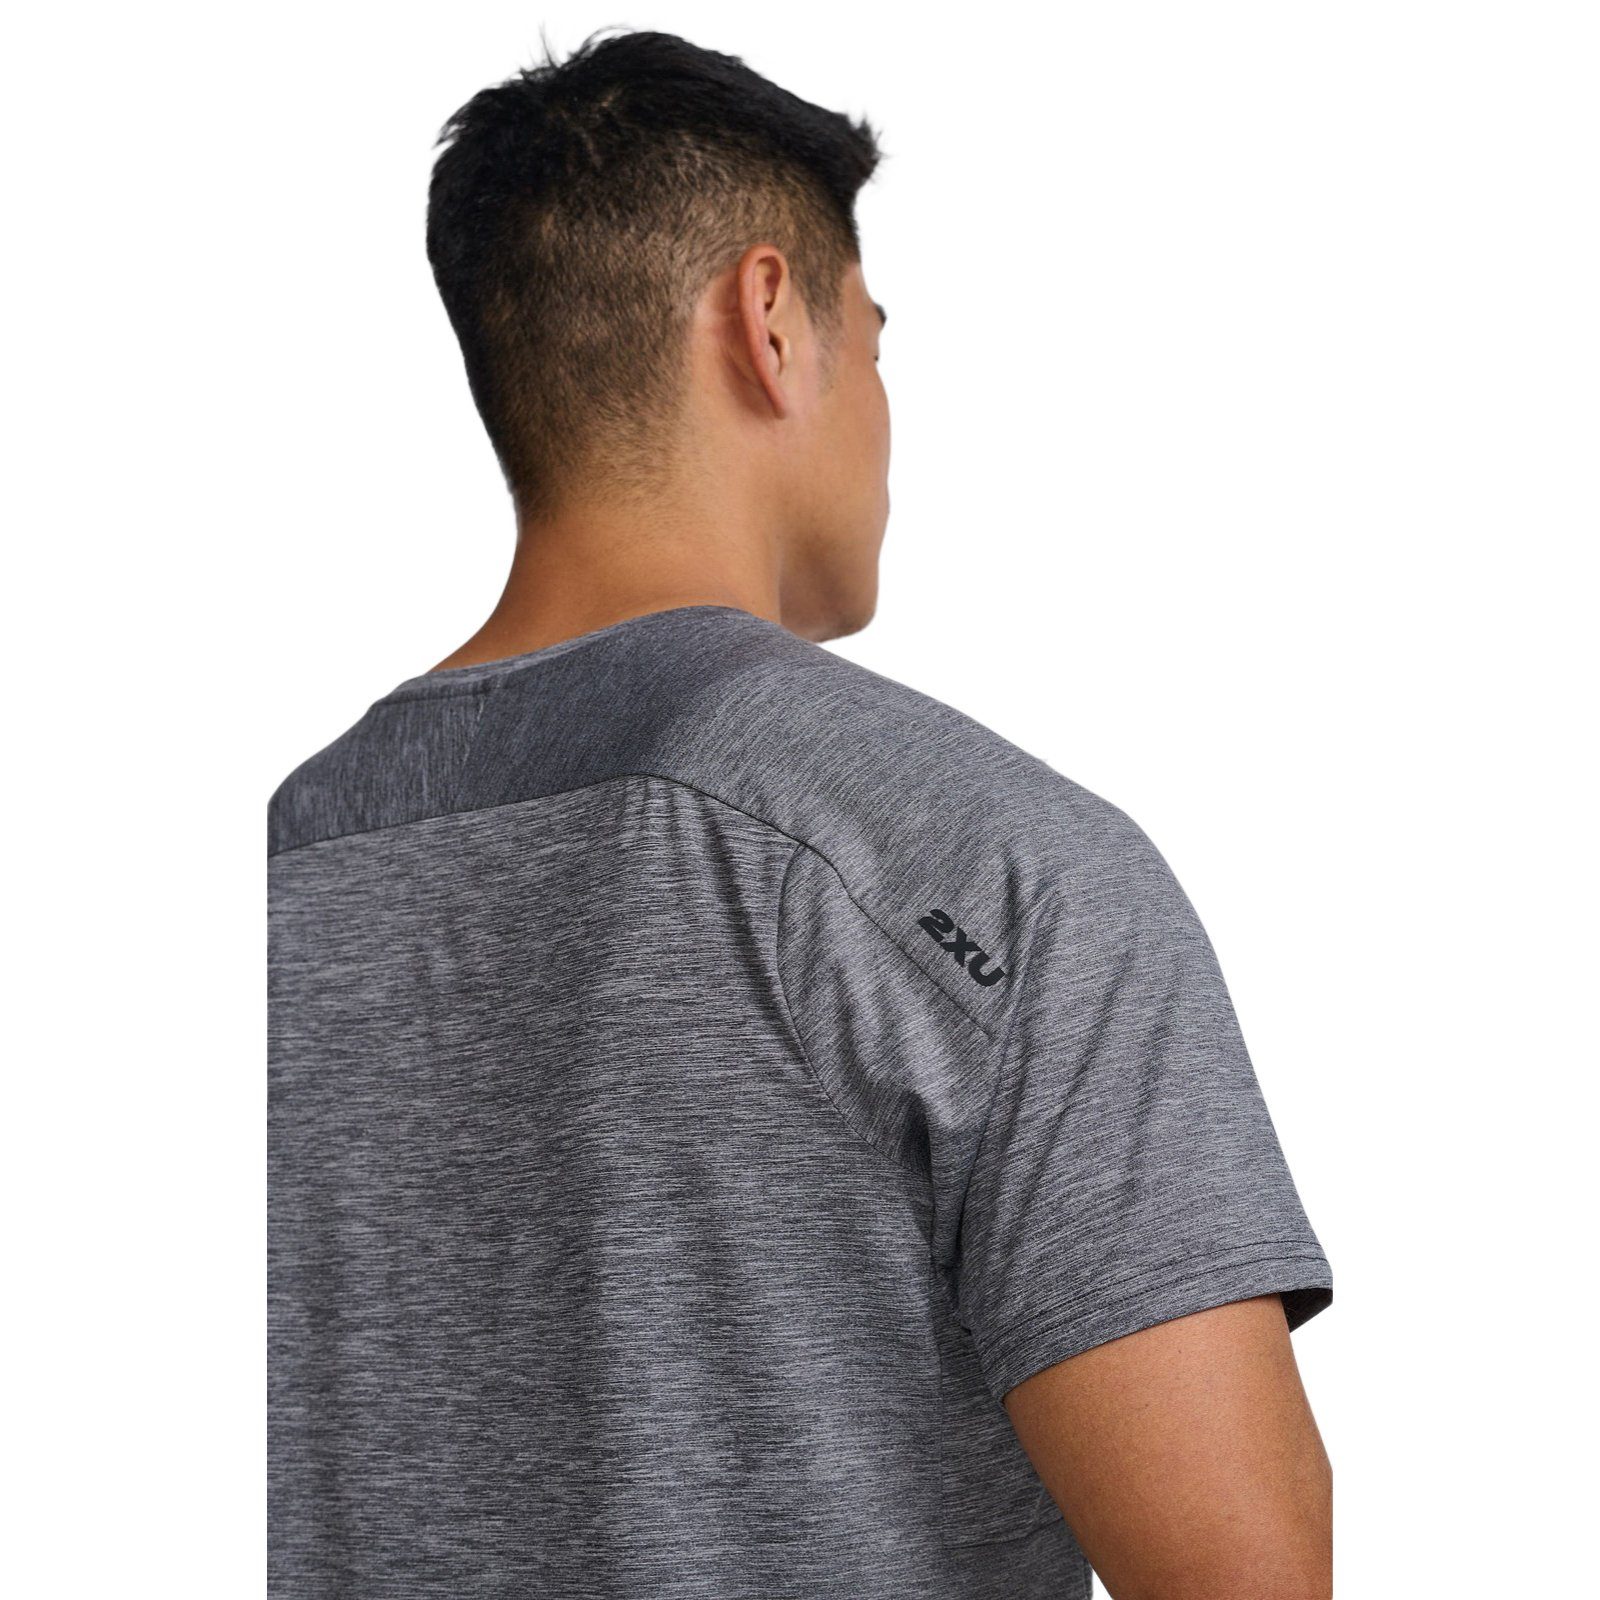 Mist/Black strapazierfähiges 2xU Material Tee Harbor Motion Trainingsshirt und Bewegungsfreiheit Laufshirt